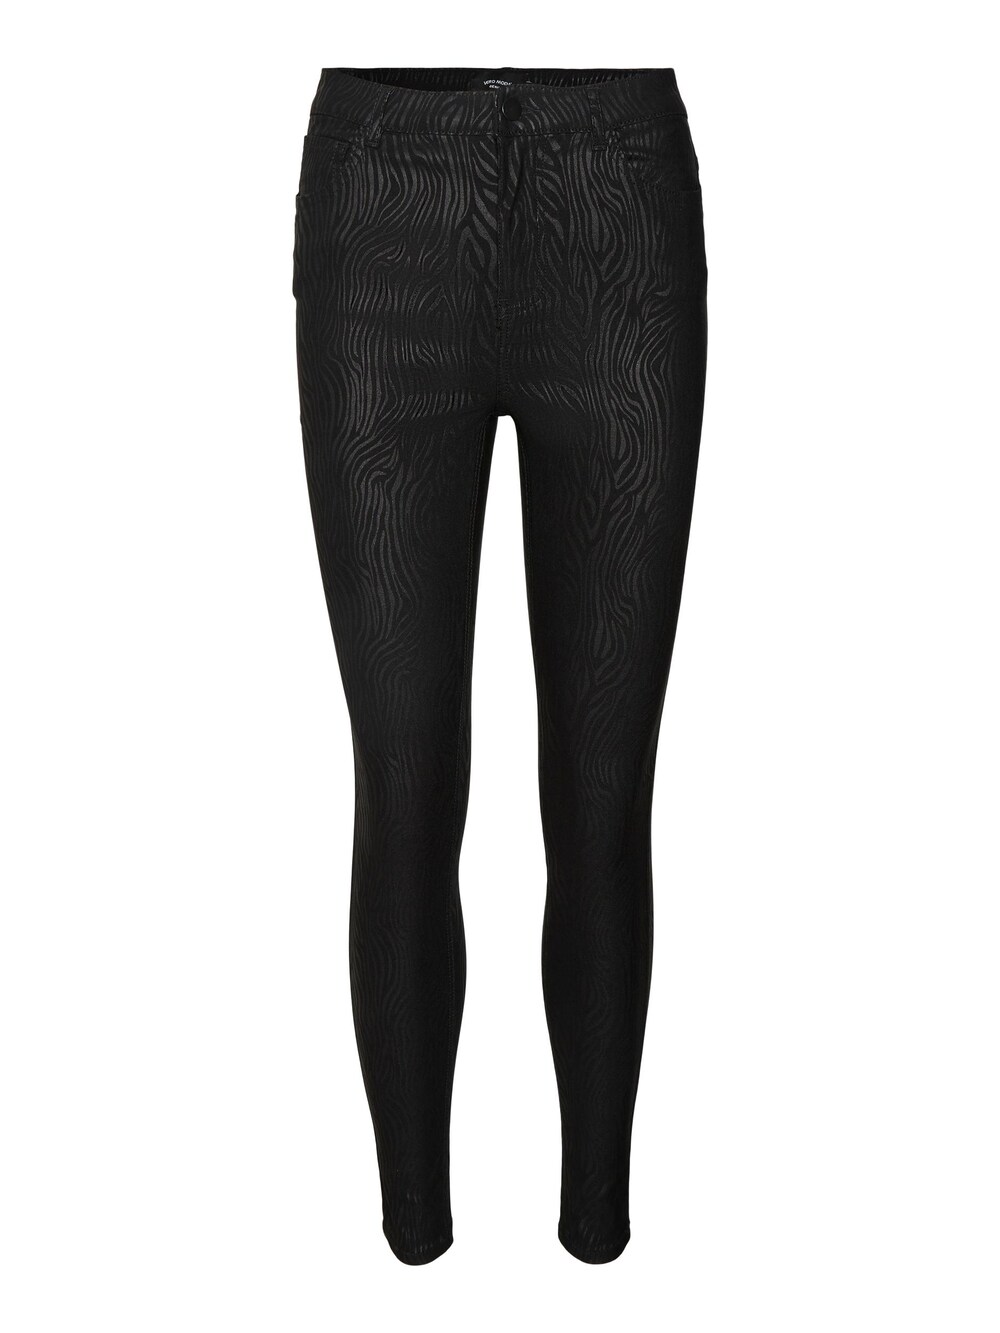 Узкие брюки VERO MODA SOPHIA, черный блузка sophia с цветочным принтом vero moda черный